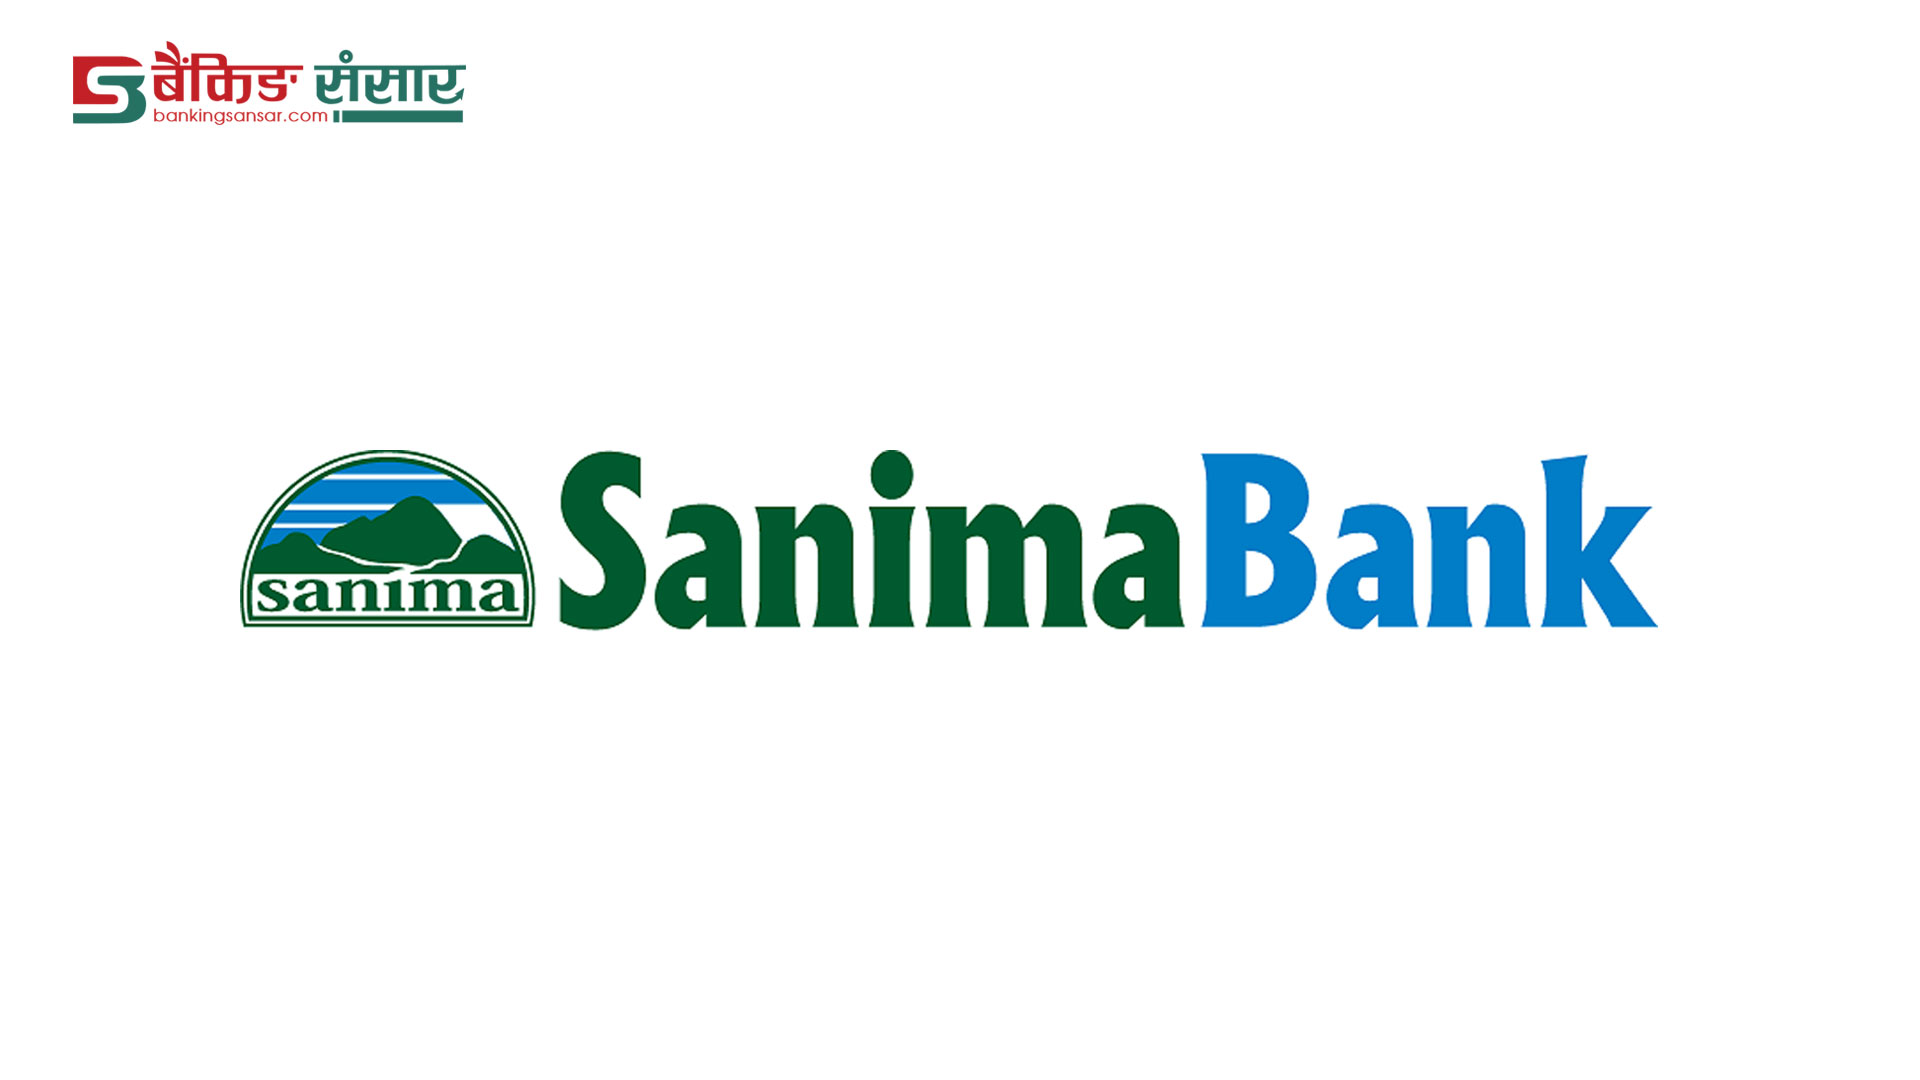 सानिमा बैंकमा रोजगारीको अवसर, इच्छुक व्यक्तिले वैशाख २६ गतेभित्र आवेदन दिन सकिने